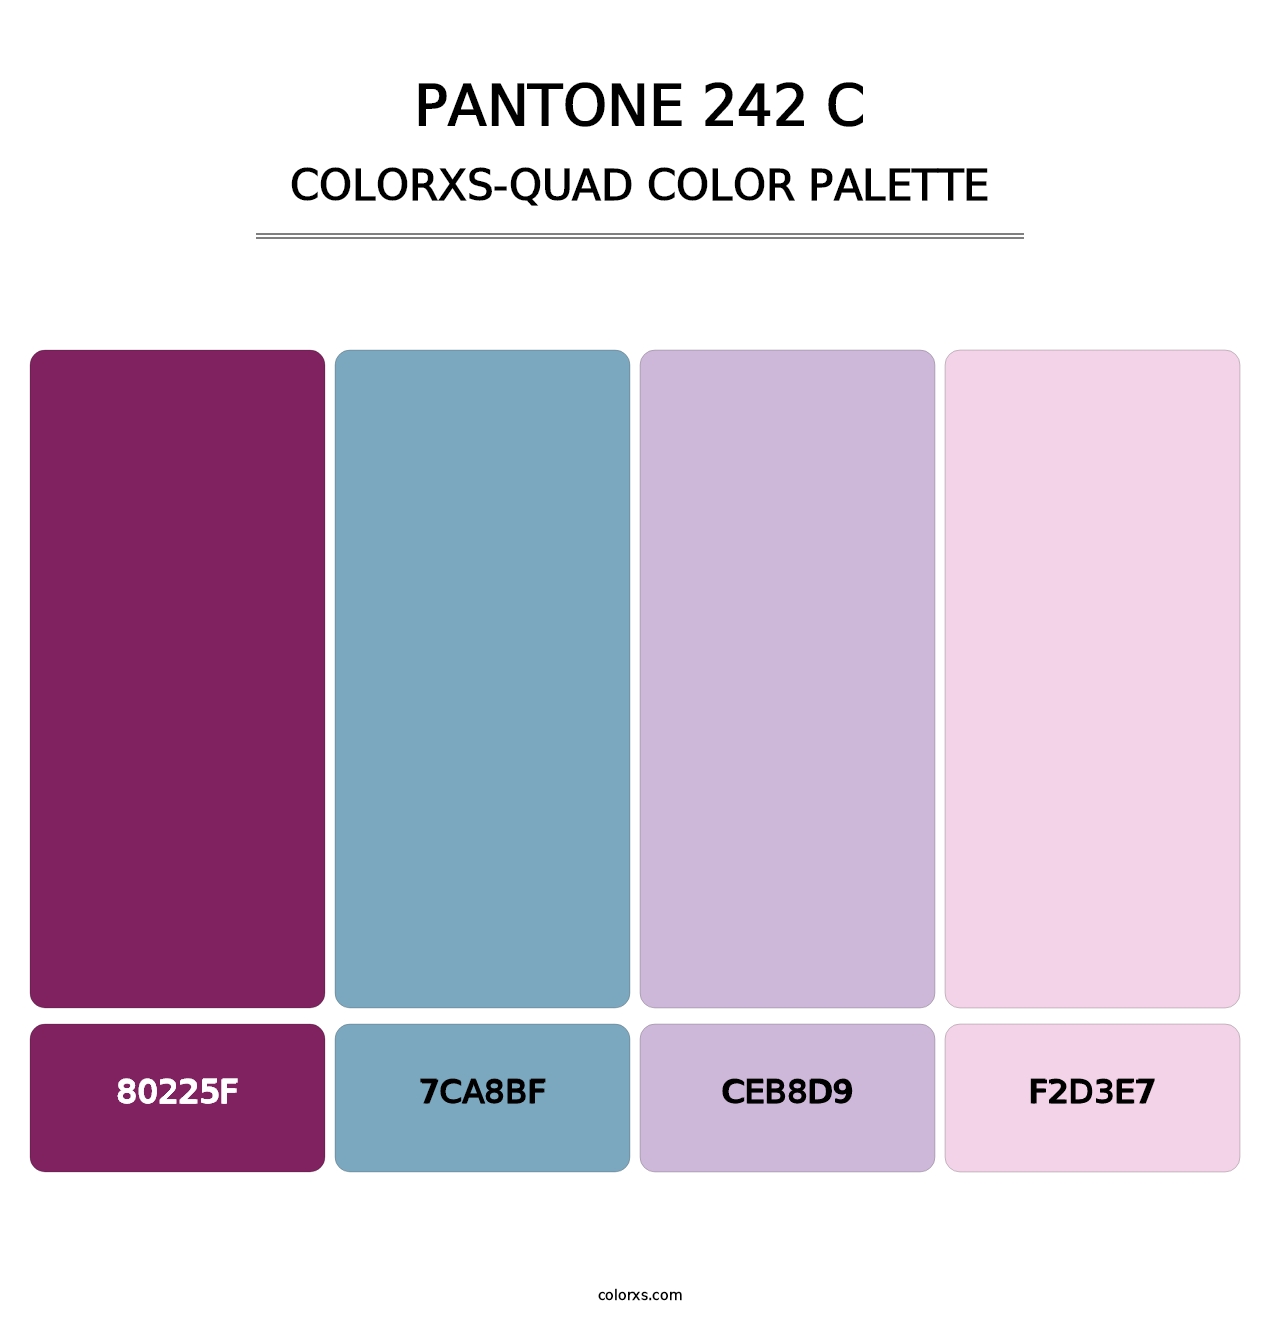 PANTONE 242 C - Colorxs Quad Palette